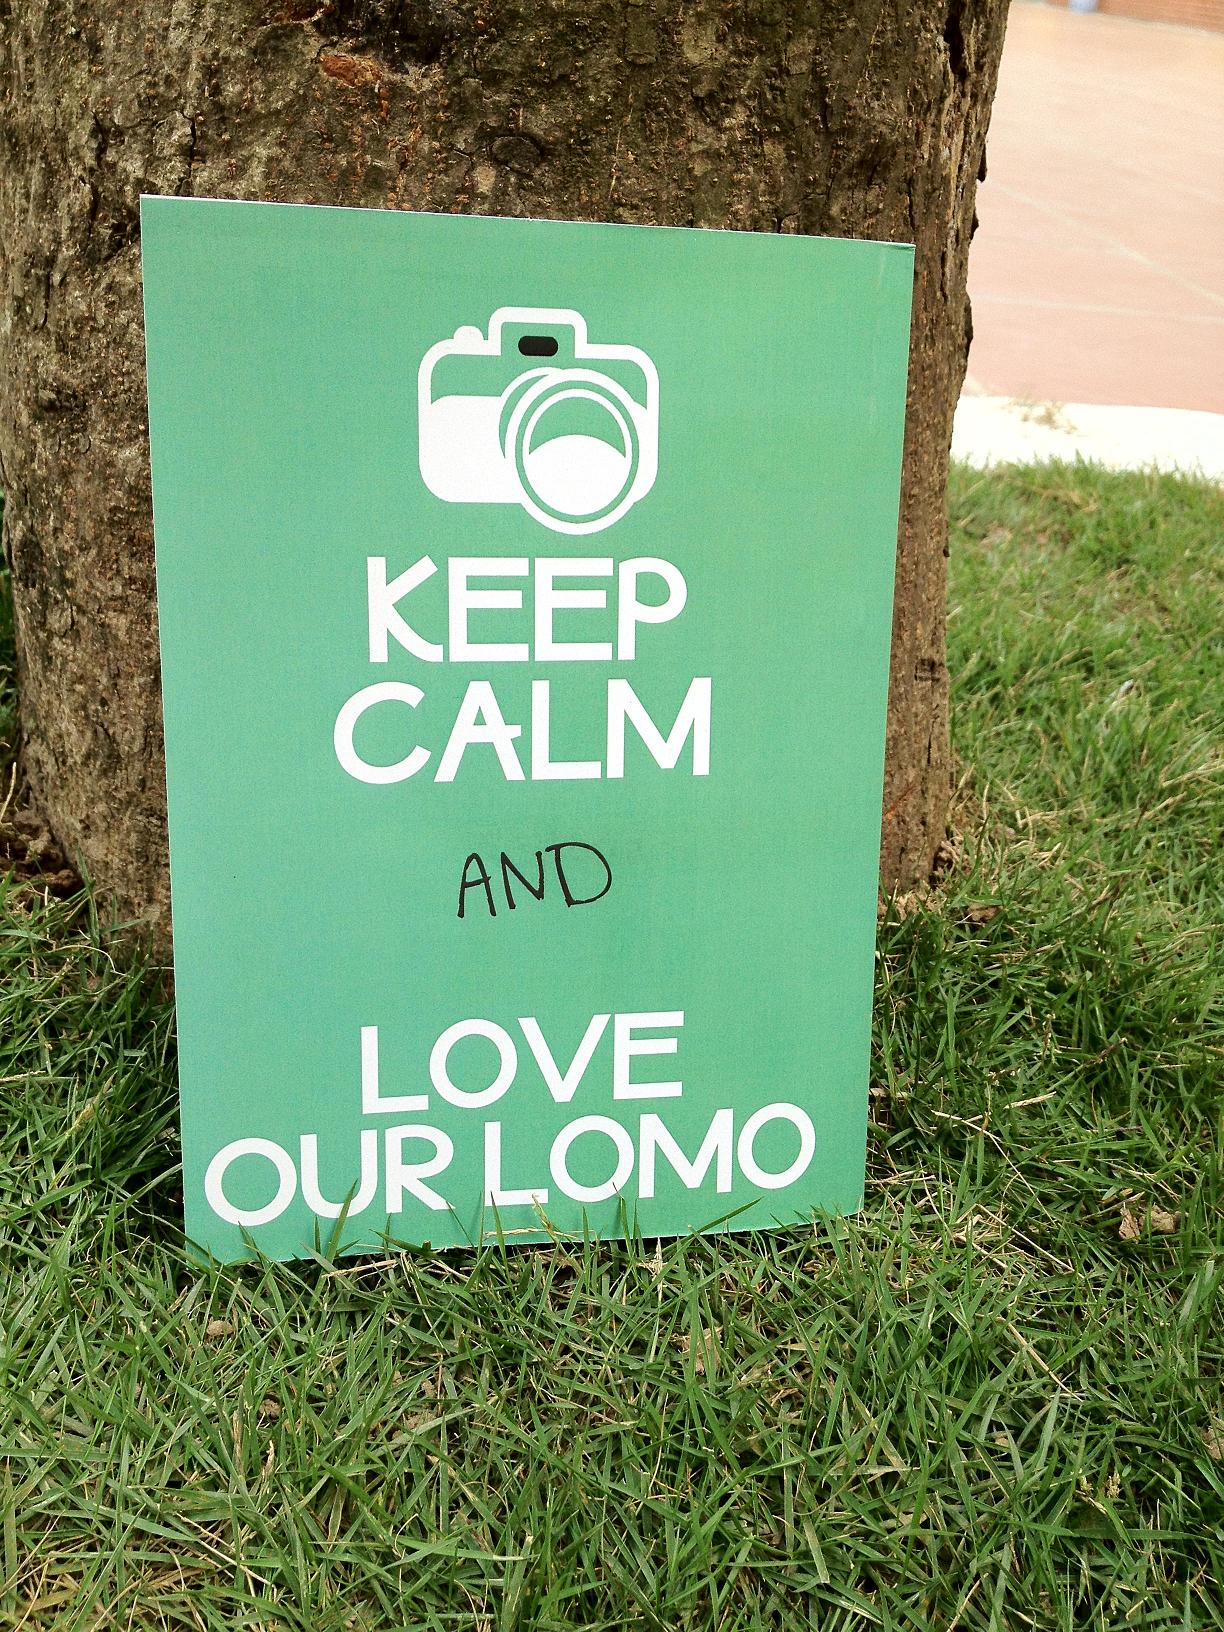 Giới thiệu ấn phẩm “My Lomo – My View” chào mừng 20 năm ngày thành lập trường